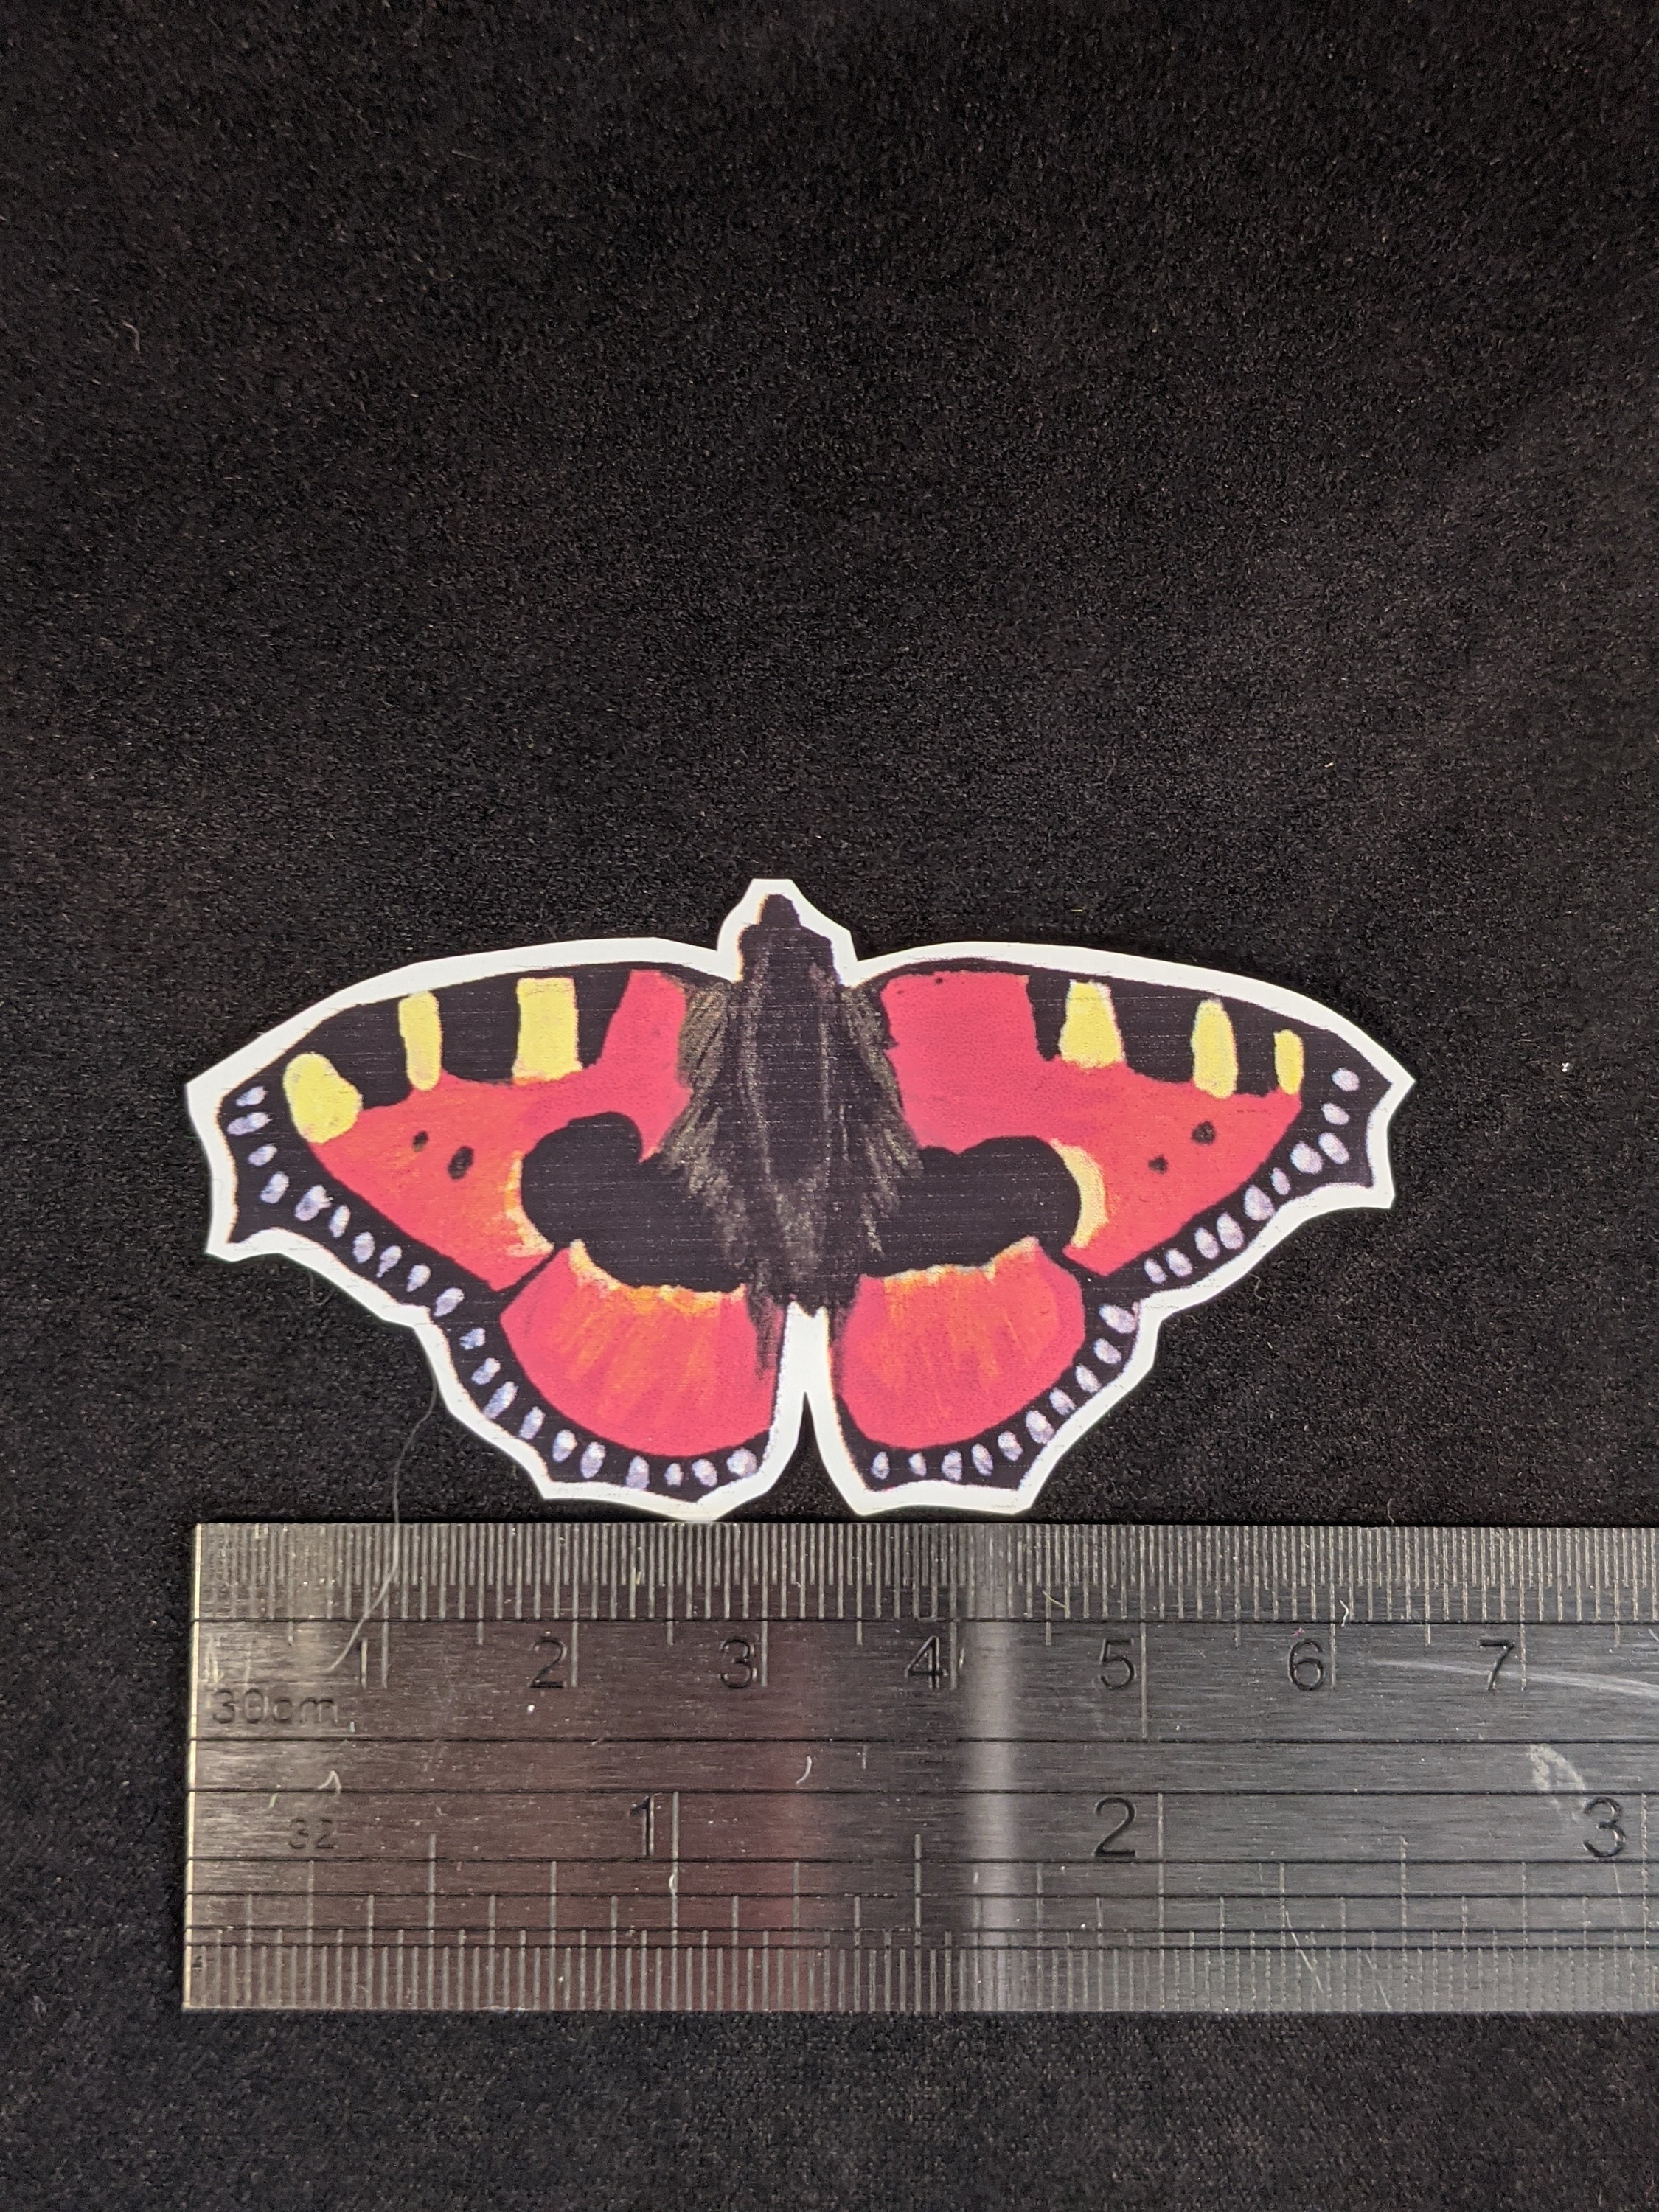 Black Vine Butterfly Vinyl Sticker, Butterfly Stickers, Best